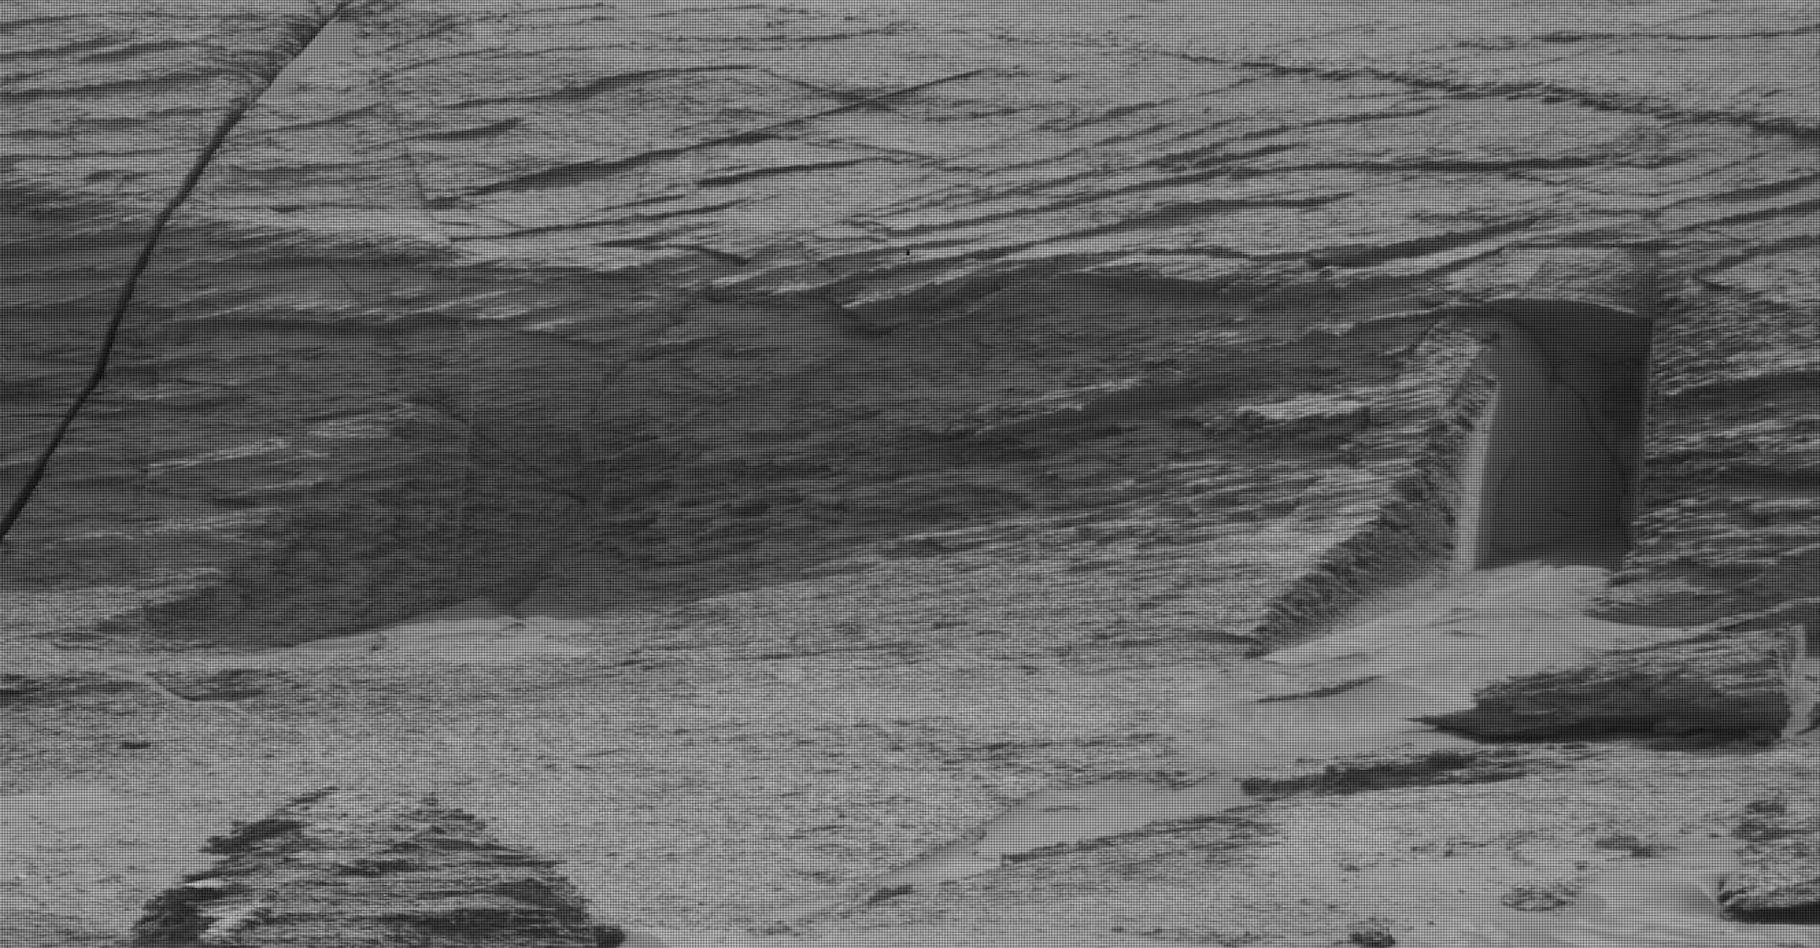 En détaillant les images renvoyées par le rover de la Nasa Curiosity, quelques-uns ont cru déceler une porte extraterrestre taillée dans la roche martienne. Une porte pour des extraterrestres de petit taille puisqu'elle ne fait pas plus de 30 centimètres de haut. © Nasa, JLP-Caltech, MSSS